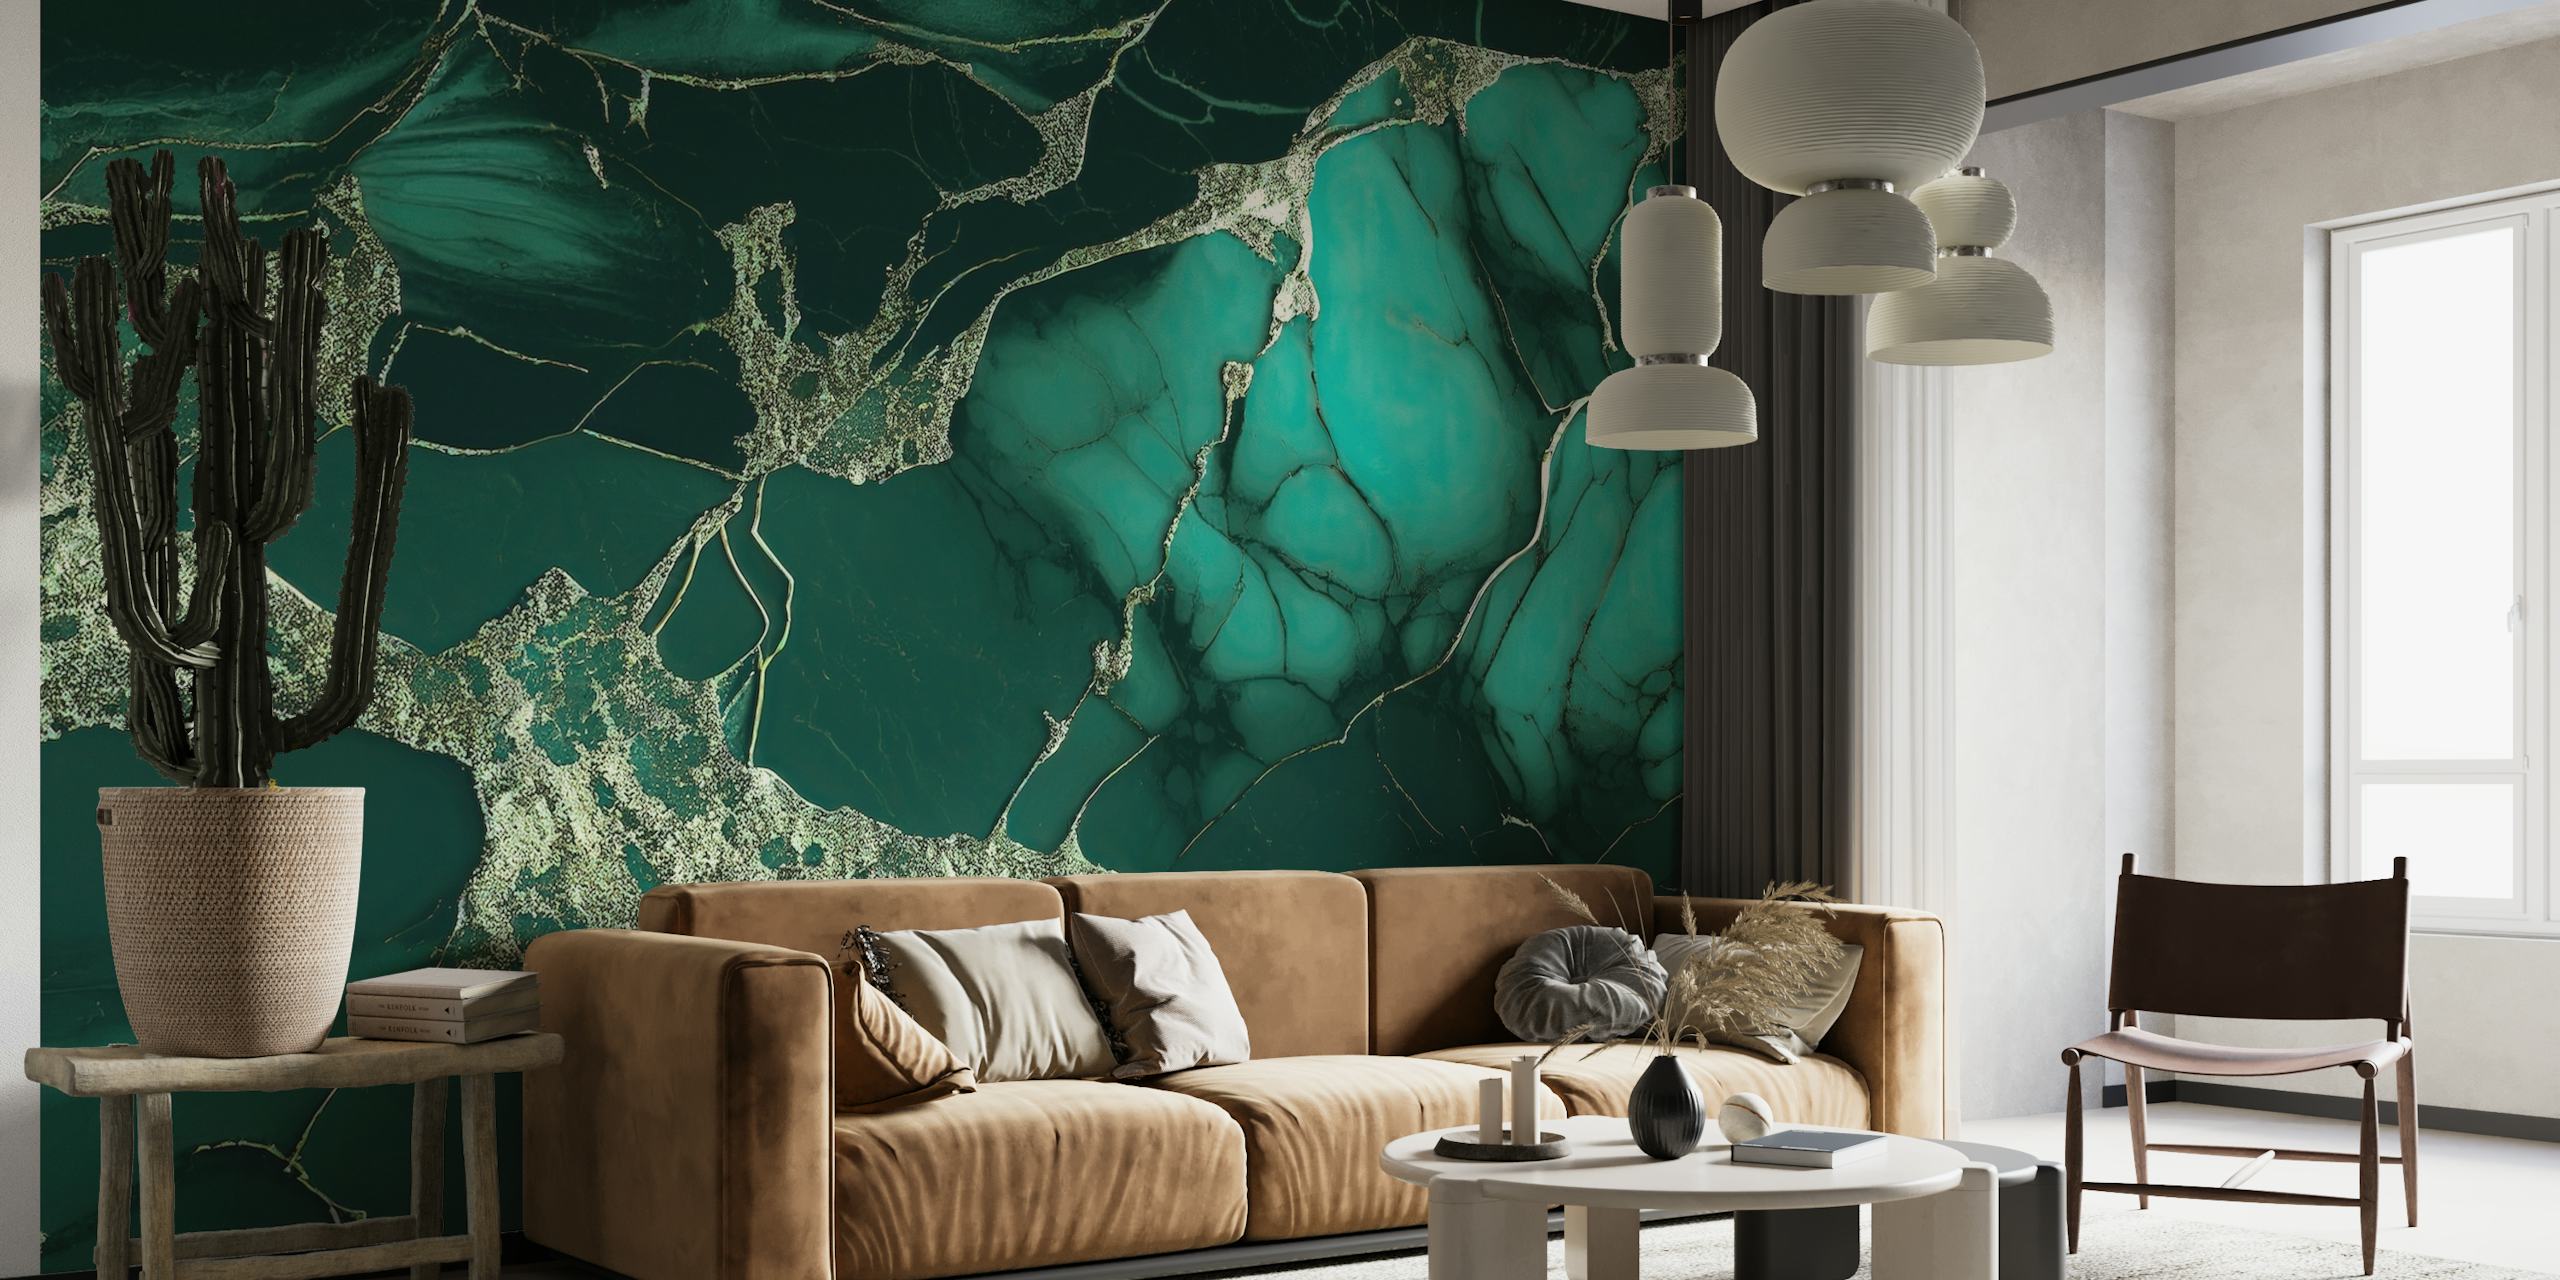 Efektní nástěnná malba Marble Emerald Green s bohatými abstraktními vzory